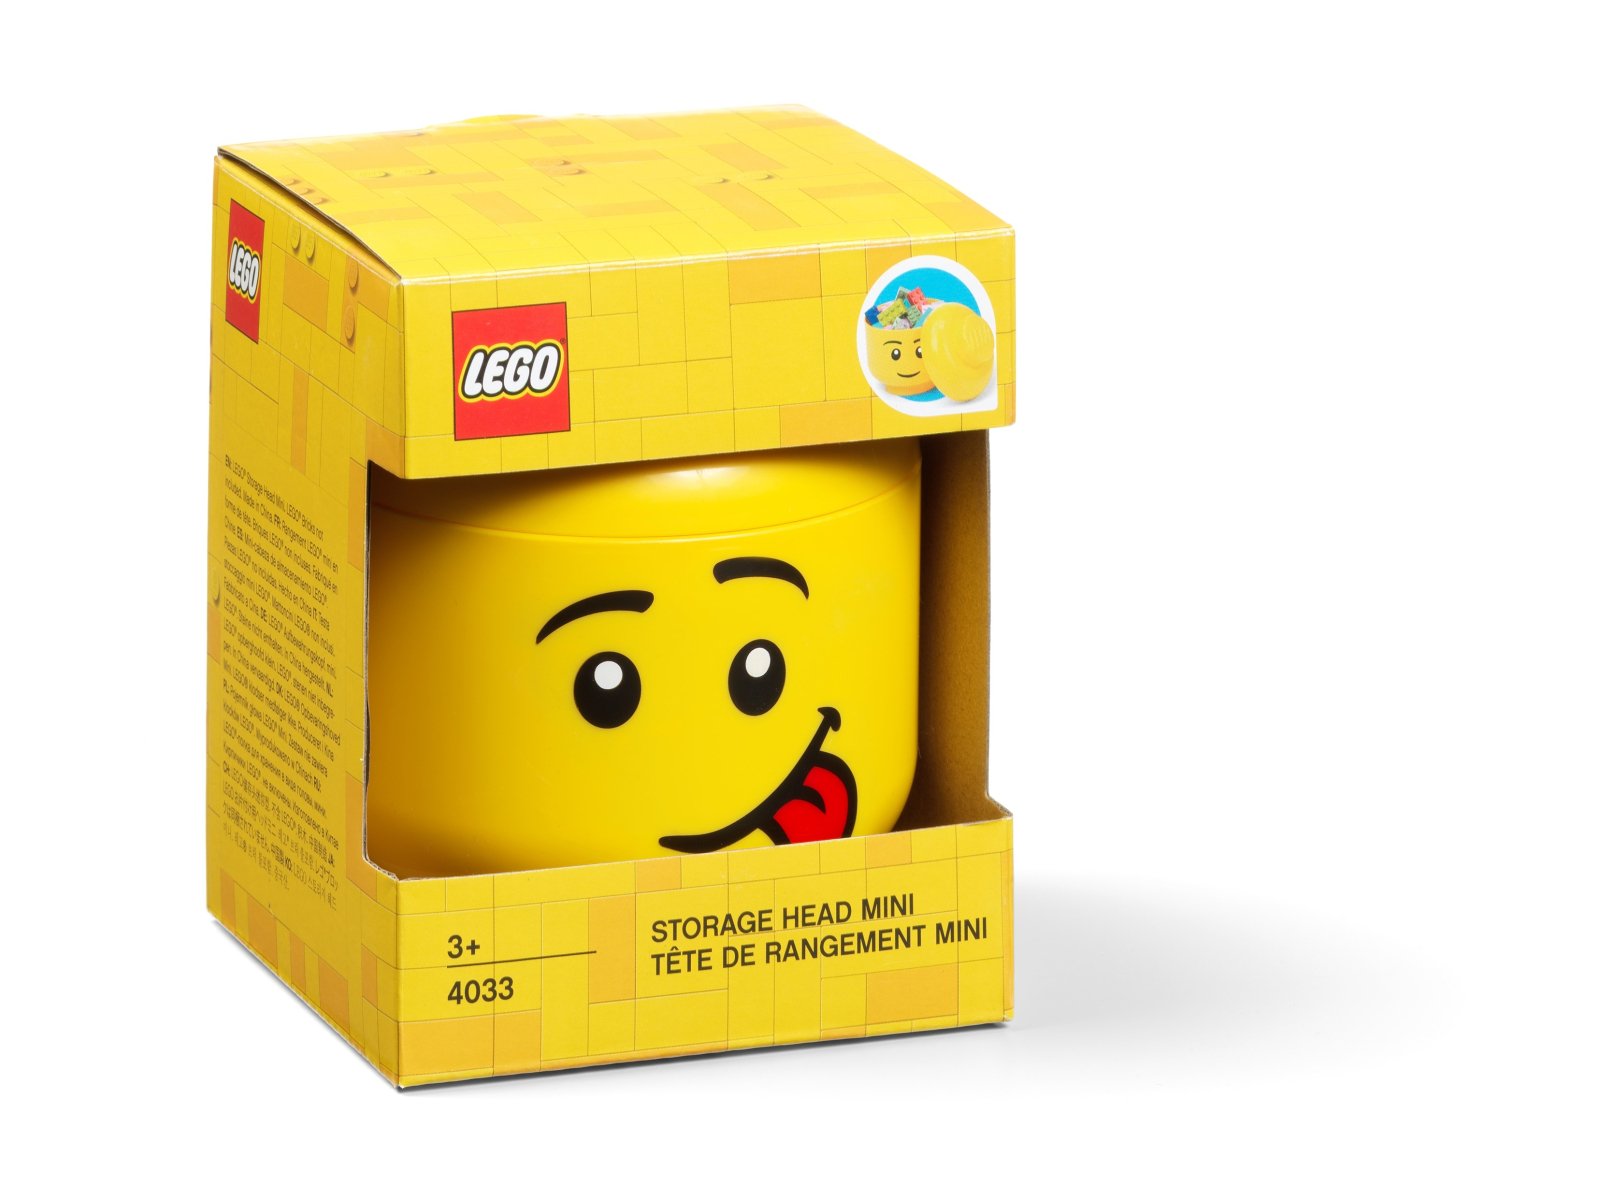 LEGO Miniaturowy pojemnik w kształcie głowy śmiesznej minifigurki LEGO® 5006210